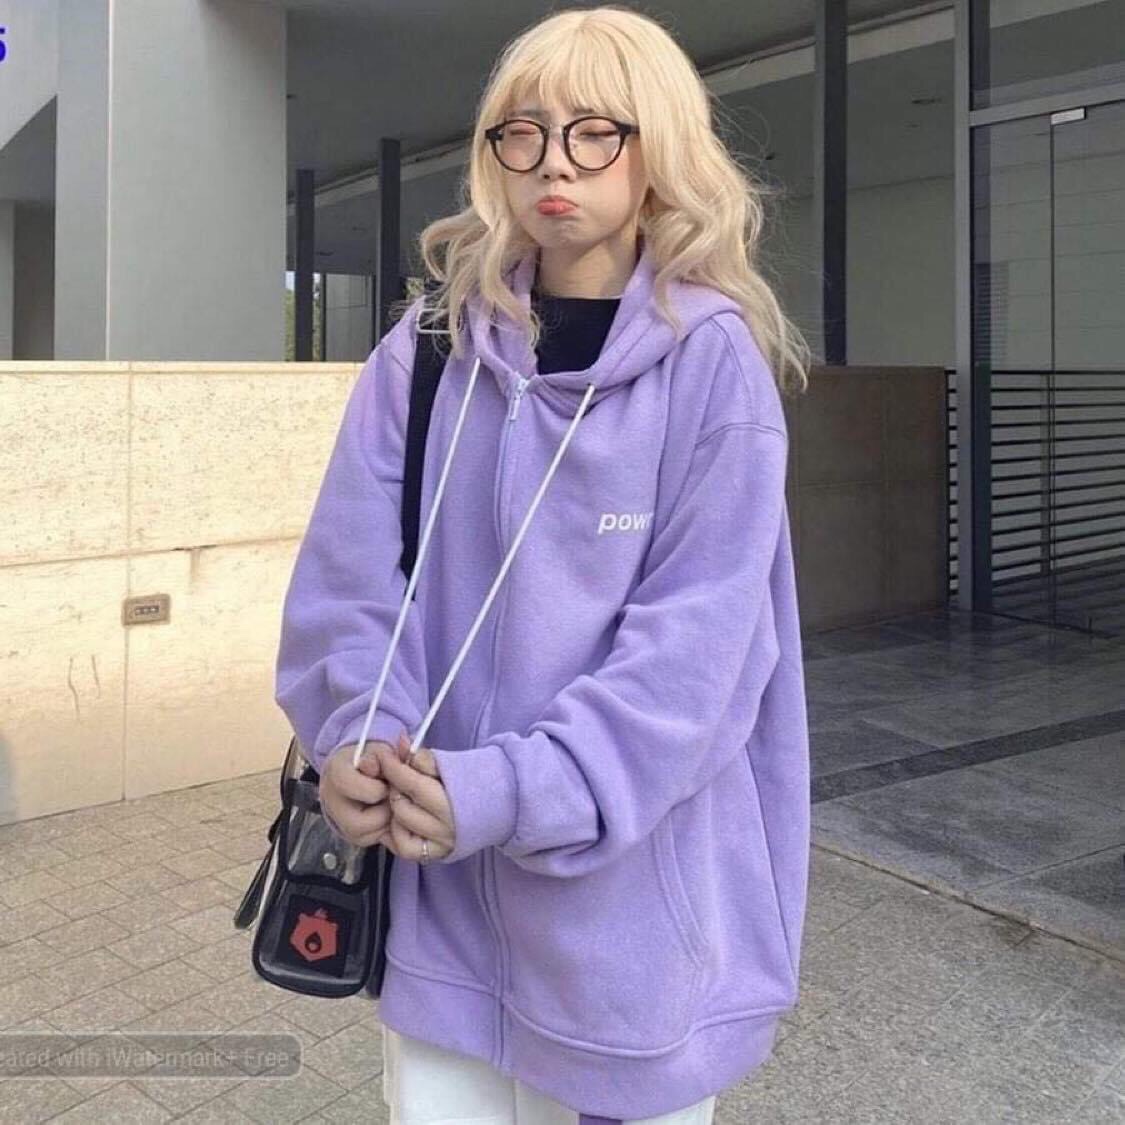 [HCM][FREESHIP TOÀN QUỐC] Áo khoác hoodie nữ form rộng có dây kéo phong cách hàn quốc Powr